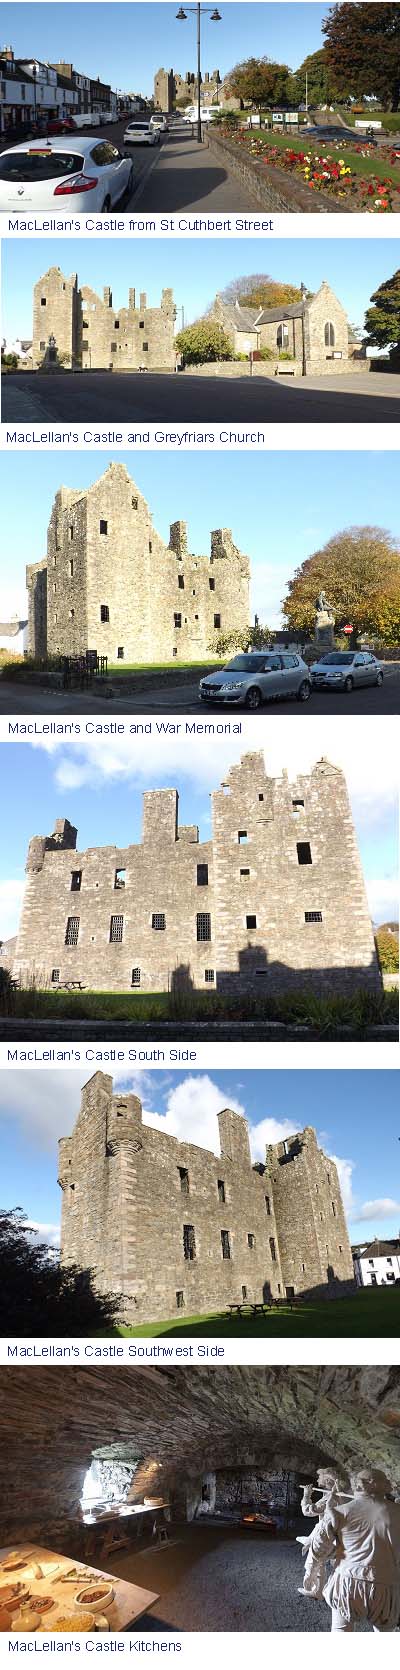 MacLellan Castle Images